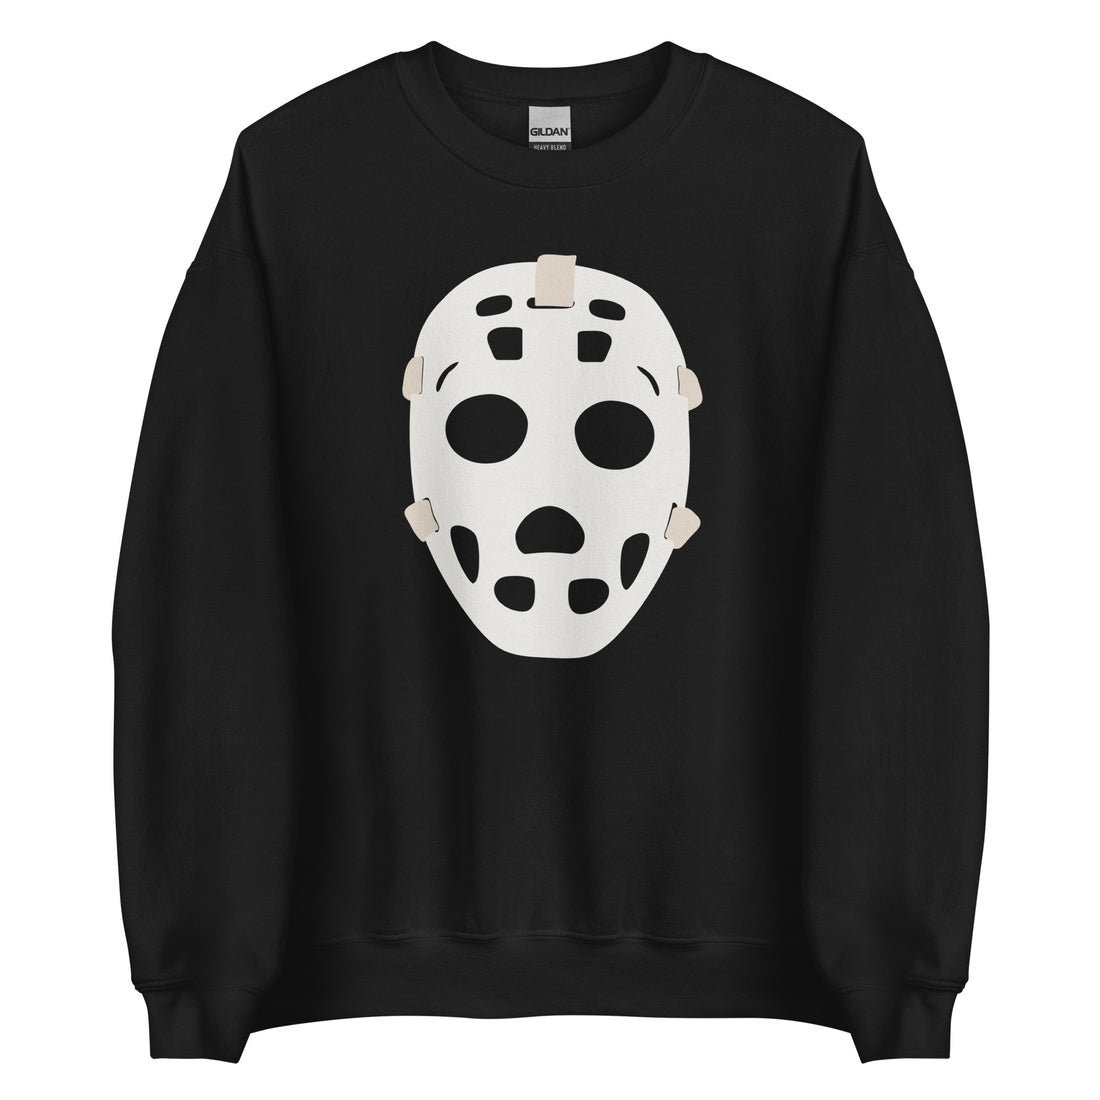 Riiink Old School Goalie Mask – Sweatshirt